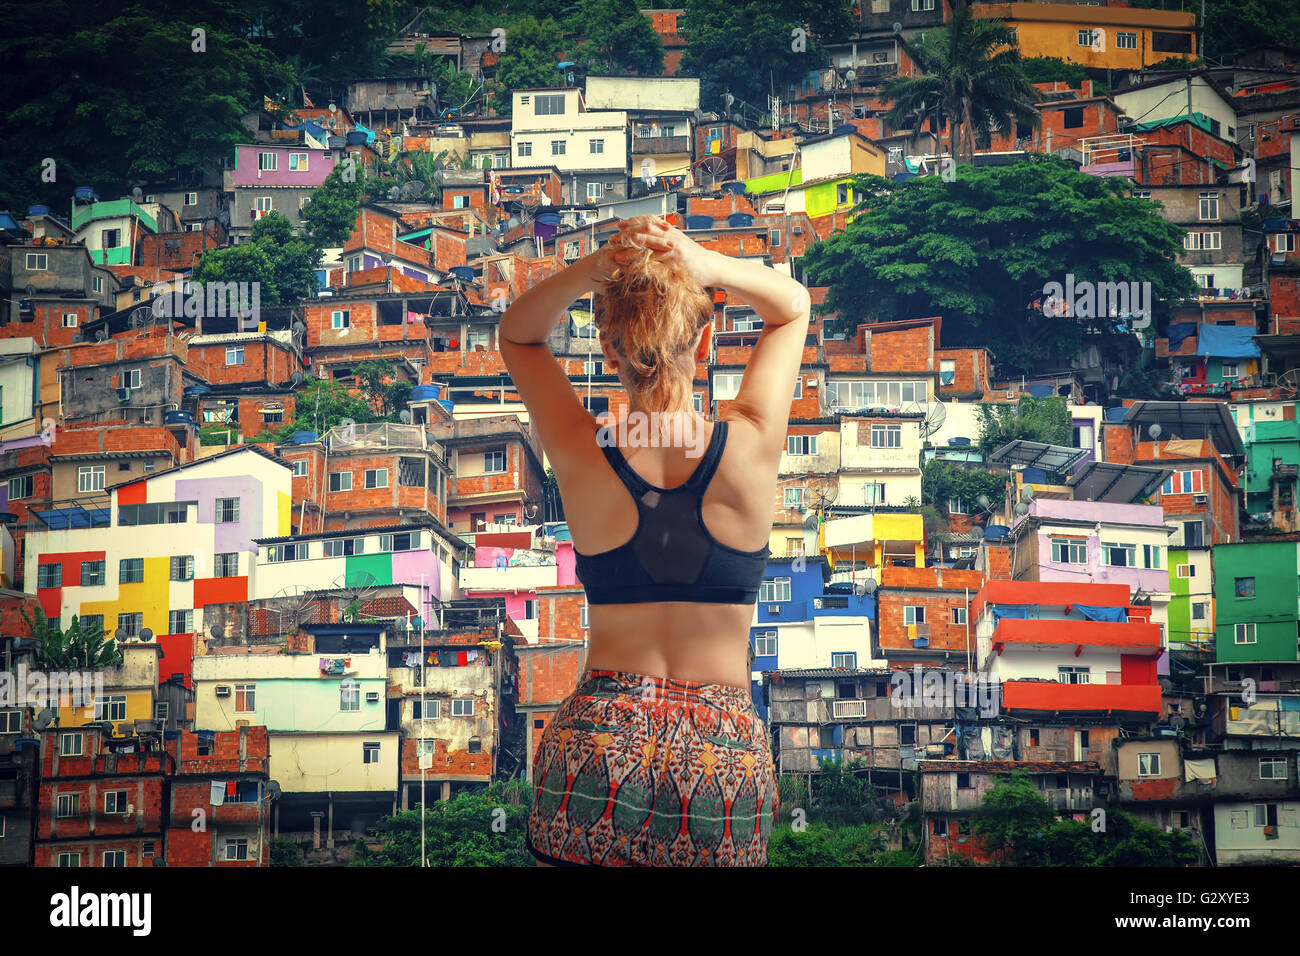 Mädchen-Athlet. Bunt bemalte Gebäude der Favela in Rio De Janeiro Brasilien Stockfoto